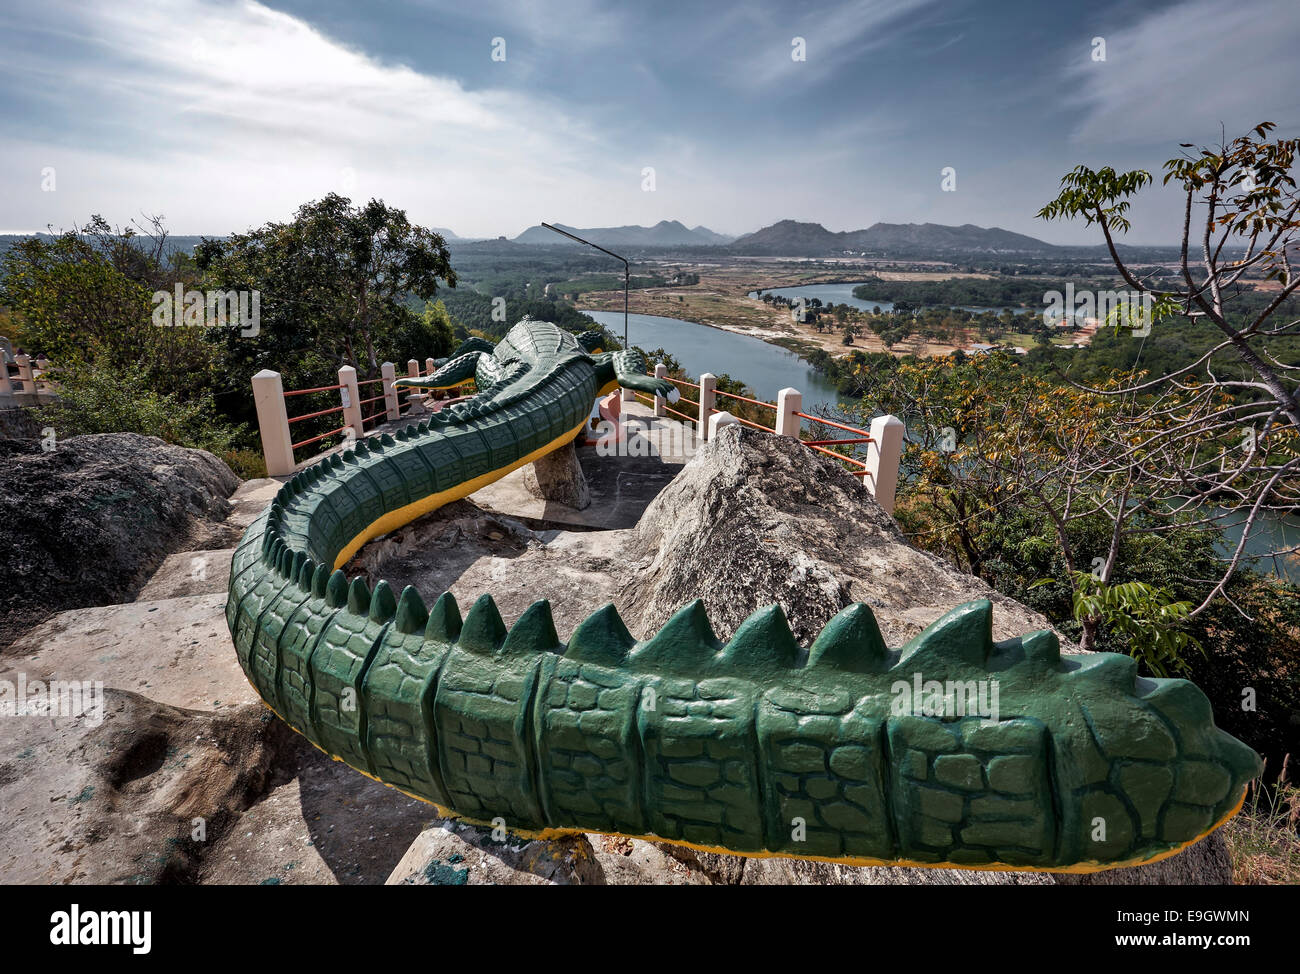 Enorme und außergewöhnliche Stein geschnitzt Krokodil Figur auf einer Klippe Top buddhistischen Tempel in Pranburi, Thailand S. E. Asien Stockfoto